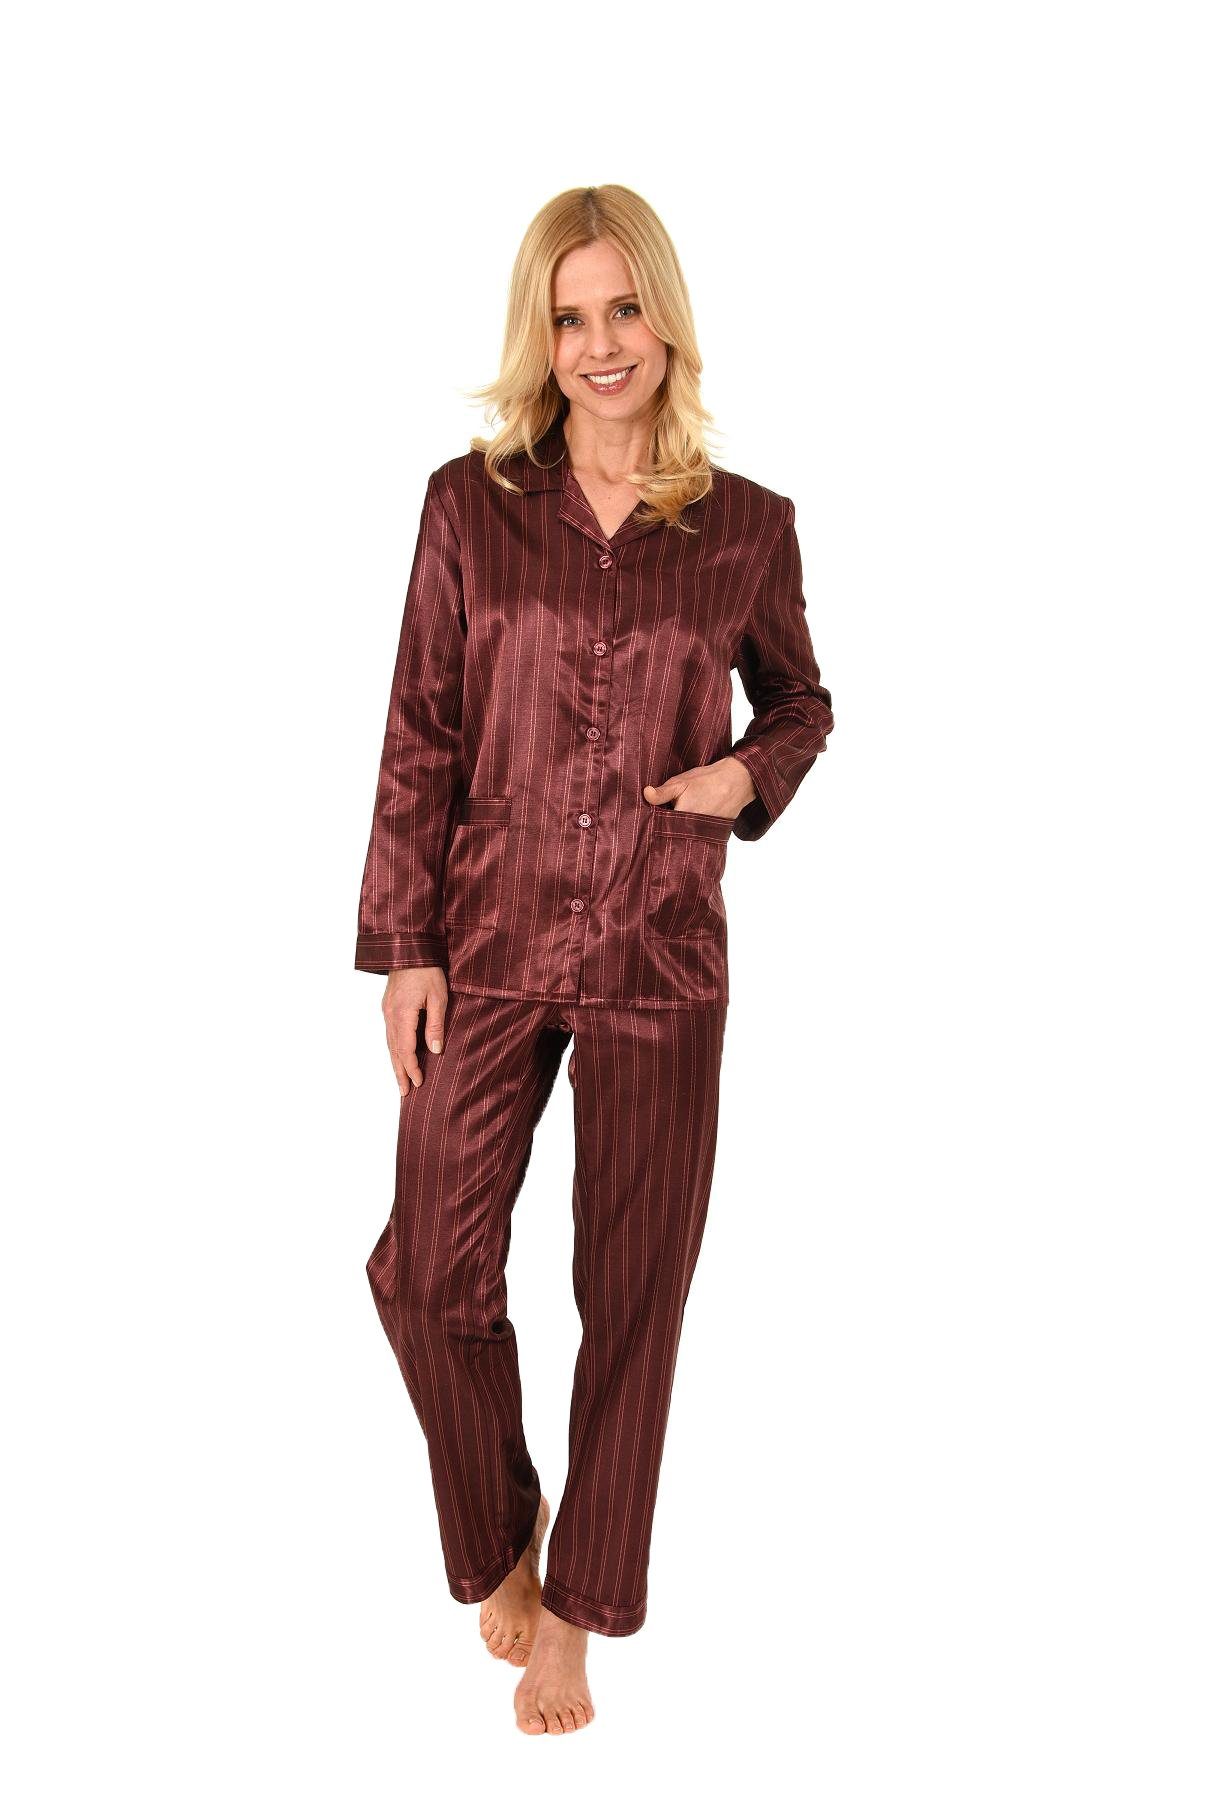 Schlafanzug Pyjama 002 94 zum in Damen durchknöpfen - Satin Normann Optik anthrazit 191